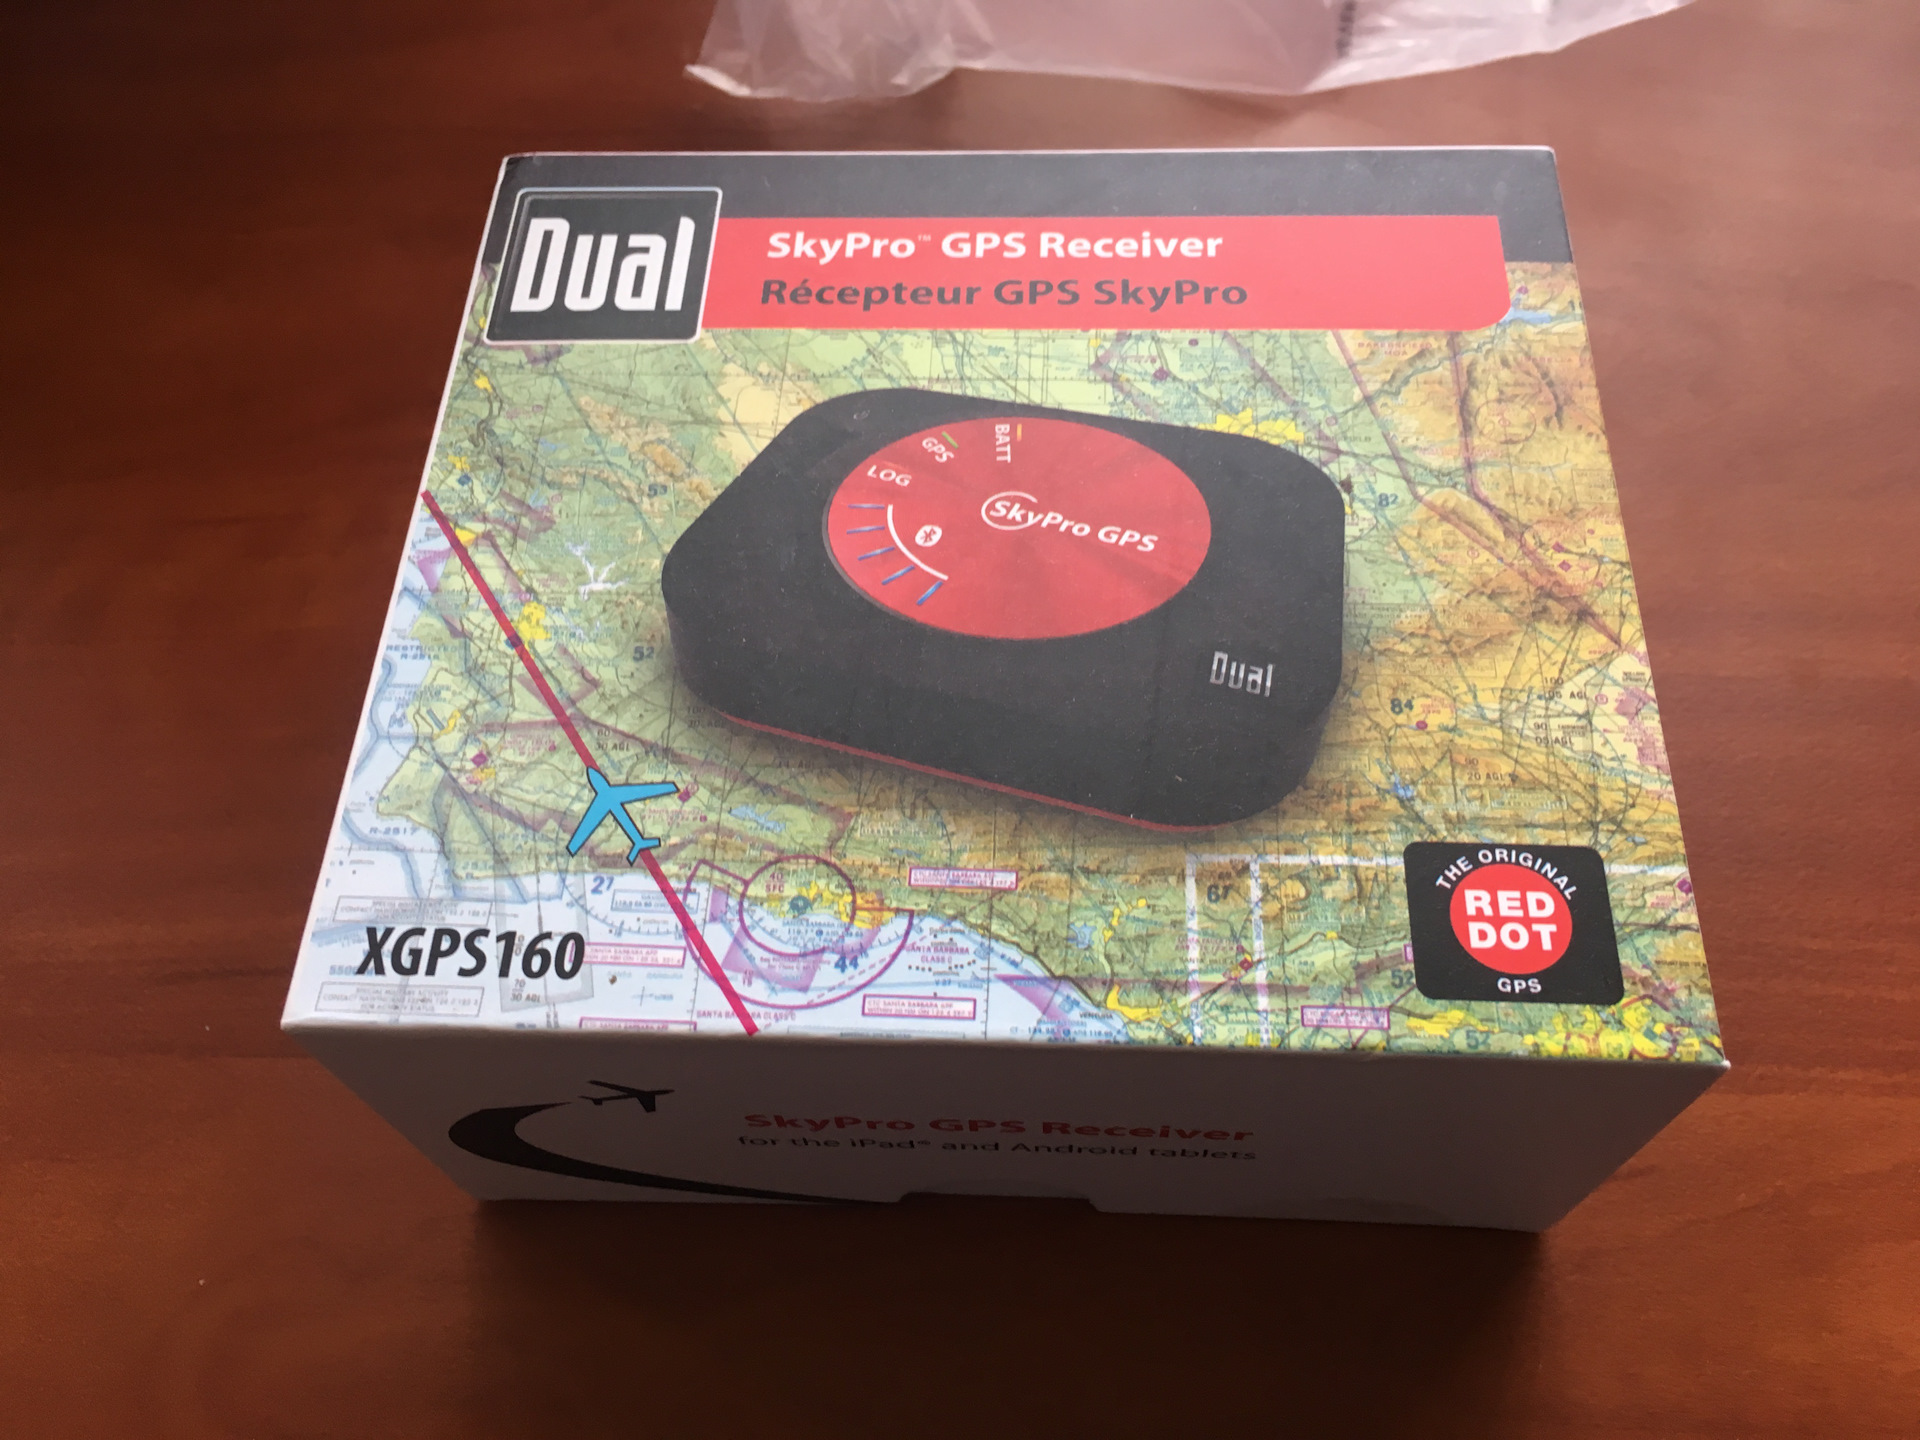 Skypro курсы отзывы. Skypro XGPS 160. GPS ресивер Dual xgps160 российский аналог. GPS Dual XGPS. Dual Universal GPS Receiver.